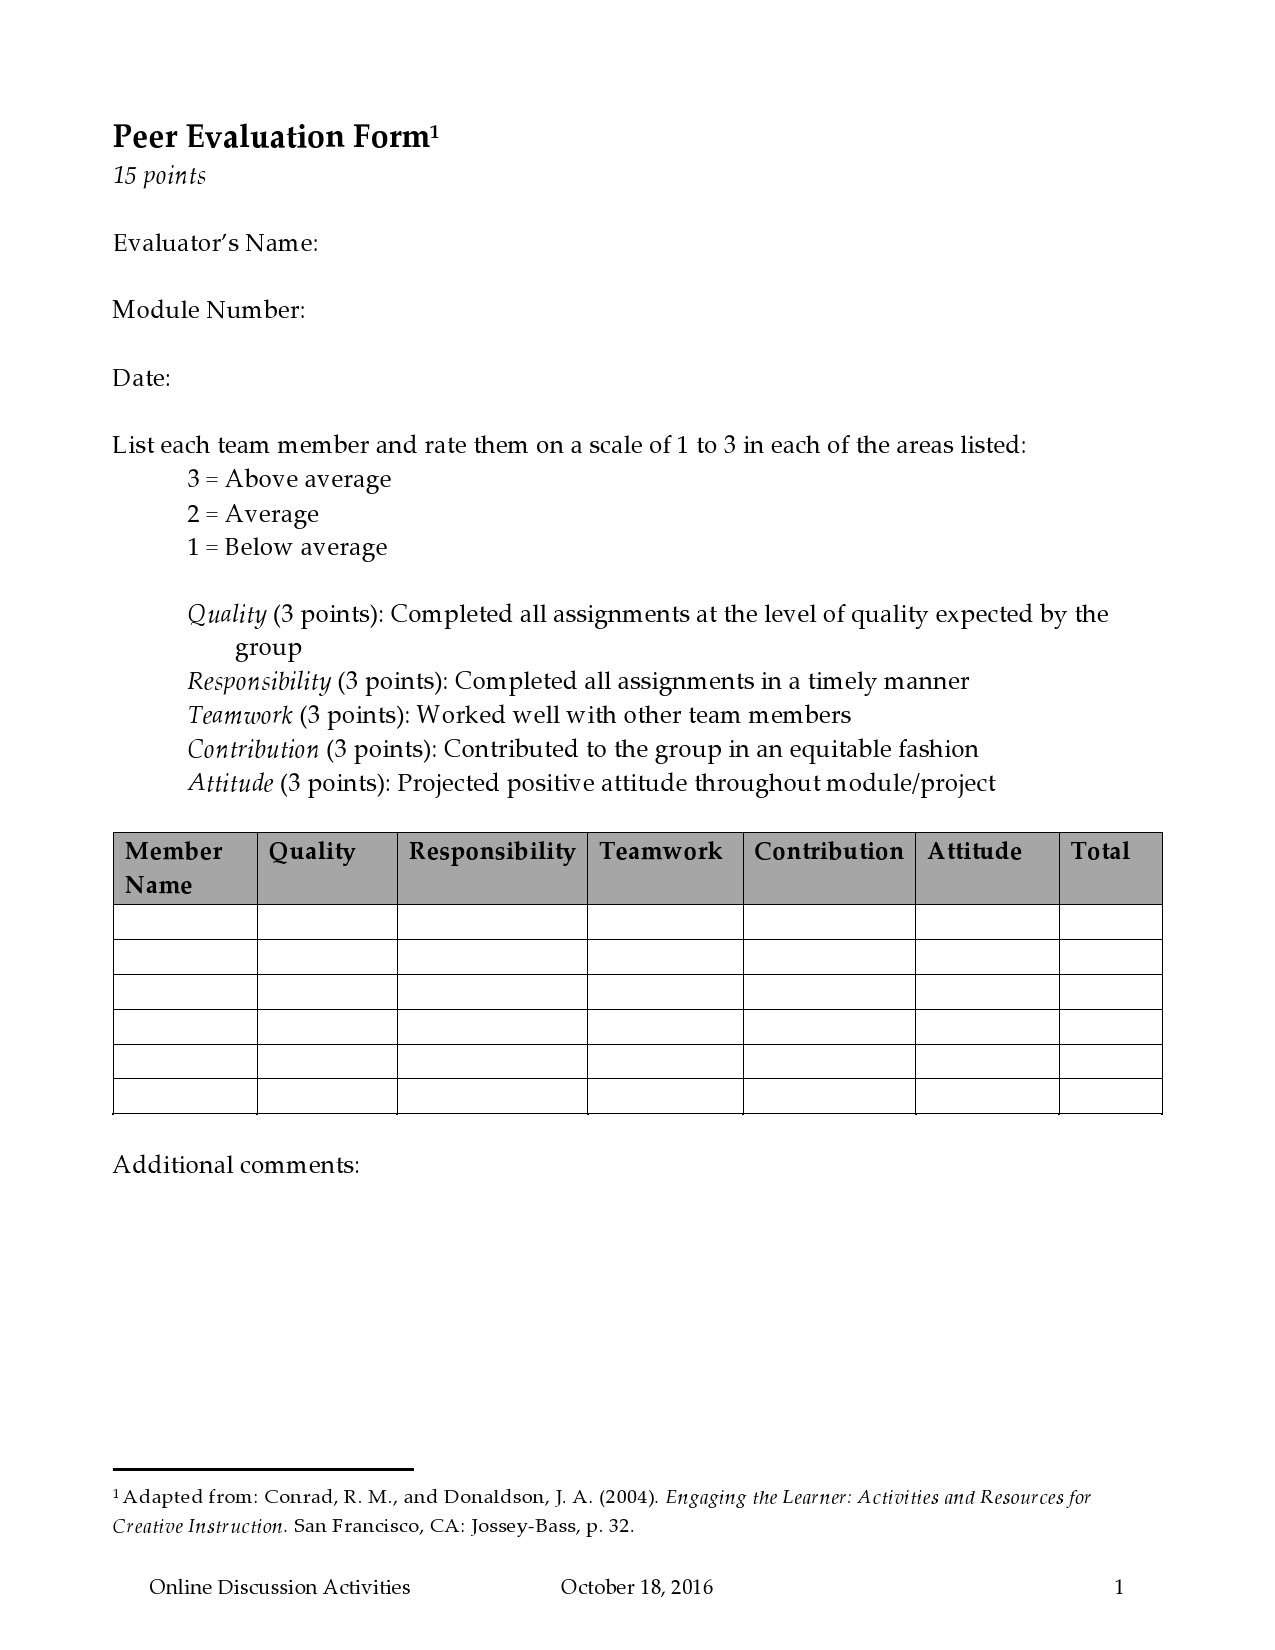 Free peer evaluation form 02